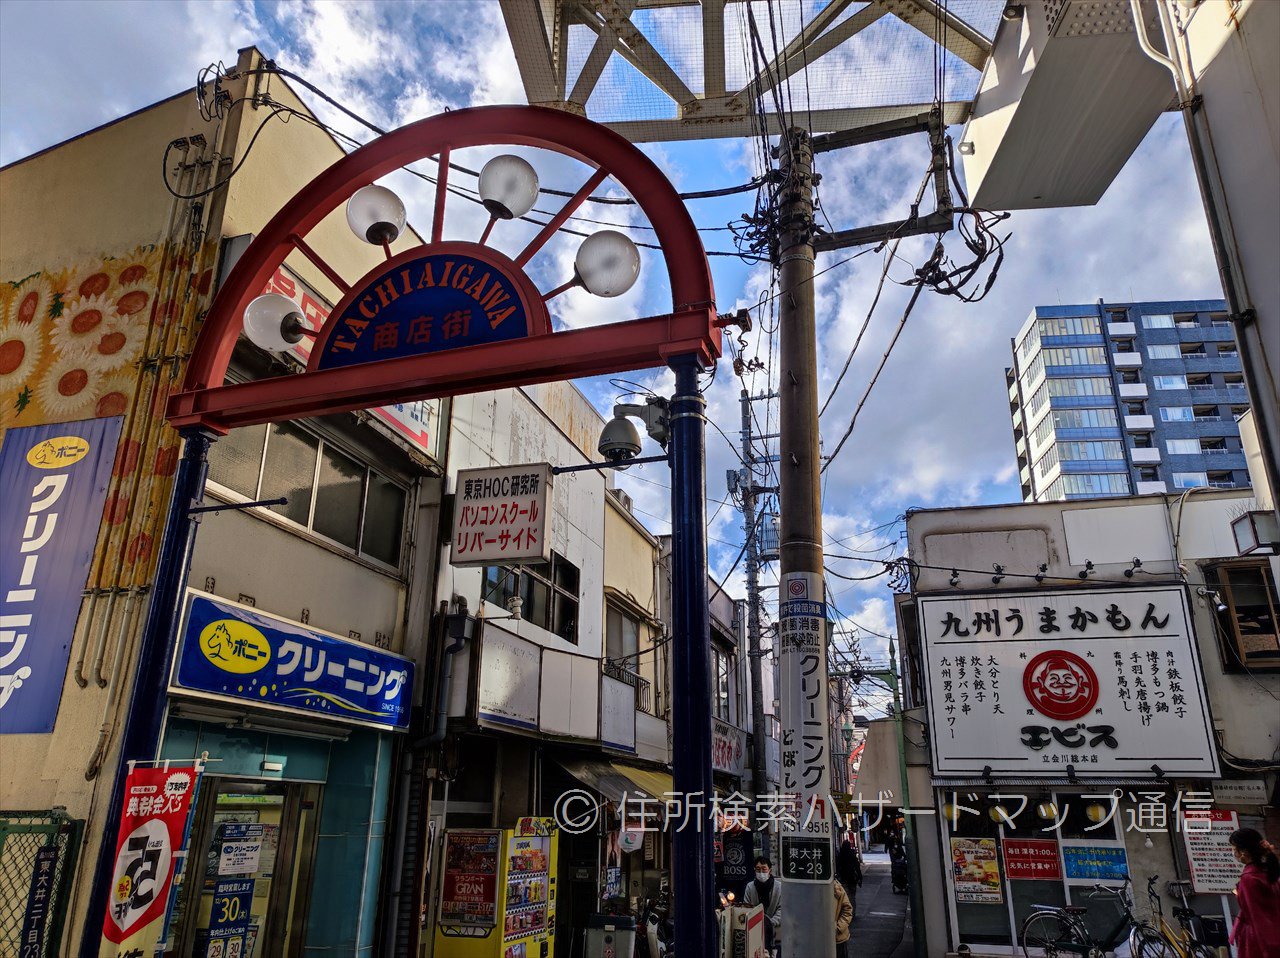 立会川駅周辺の商店街